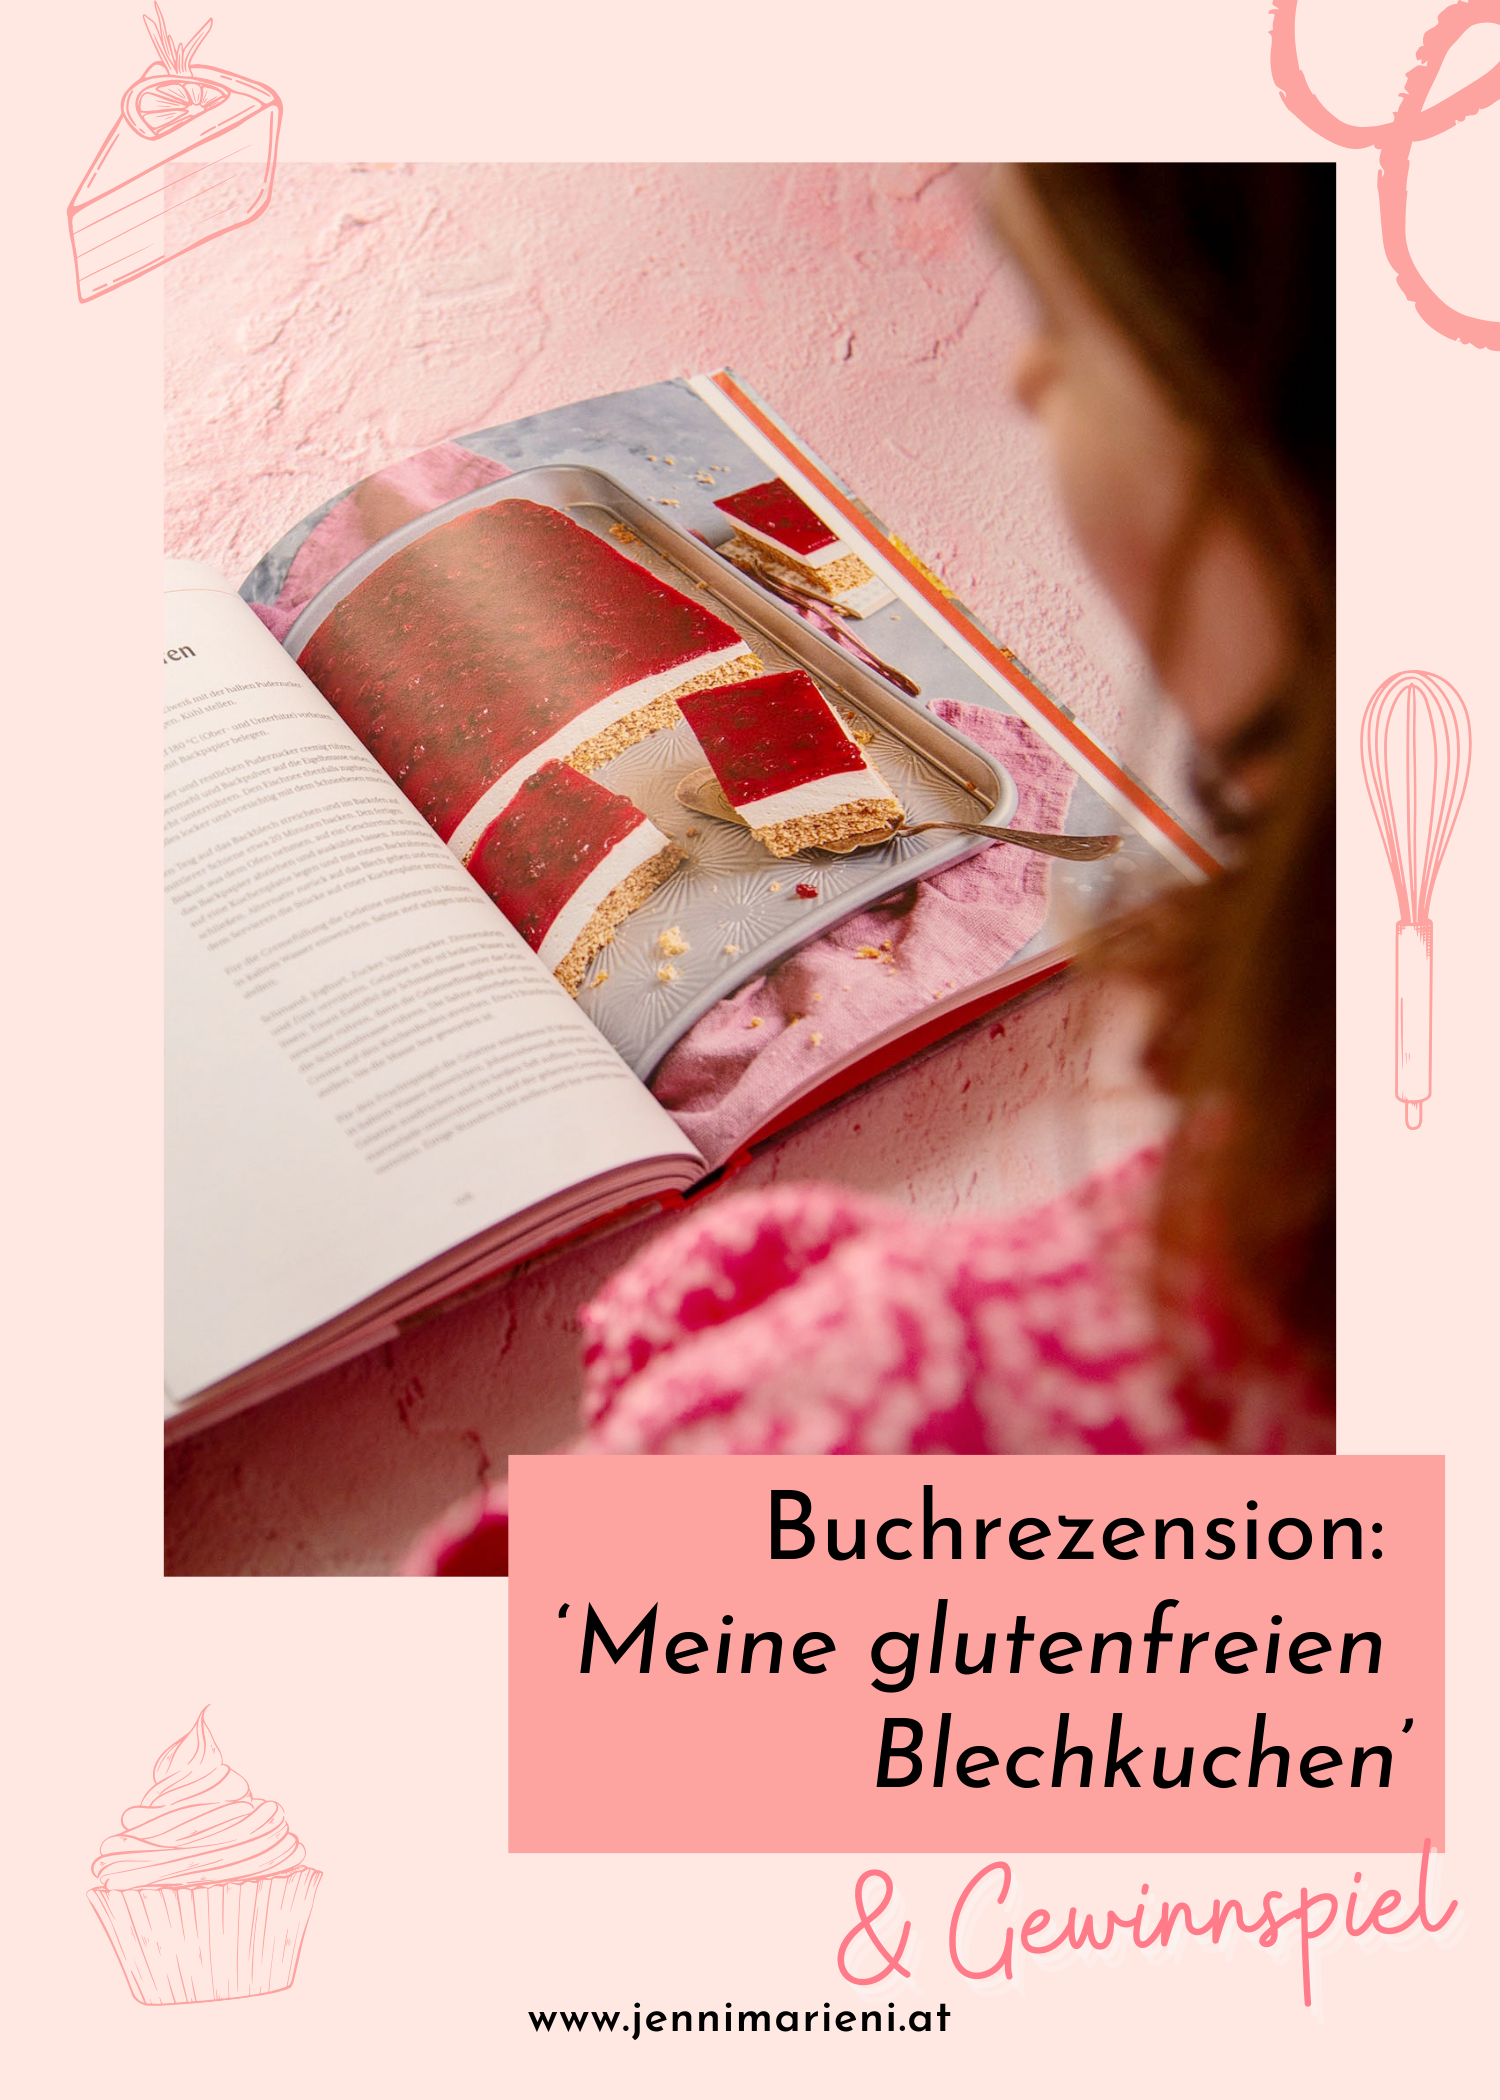 Rezension: ‚Meine glutenfreien Blechkuchen‘ von Tanja Gruber – Das neue glutenfreie Backbuch in meiner Küche. [Werbung|Gewinnspiel]